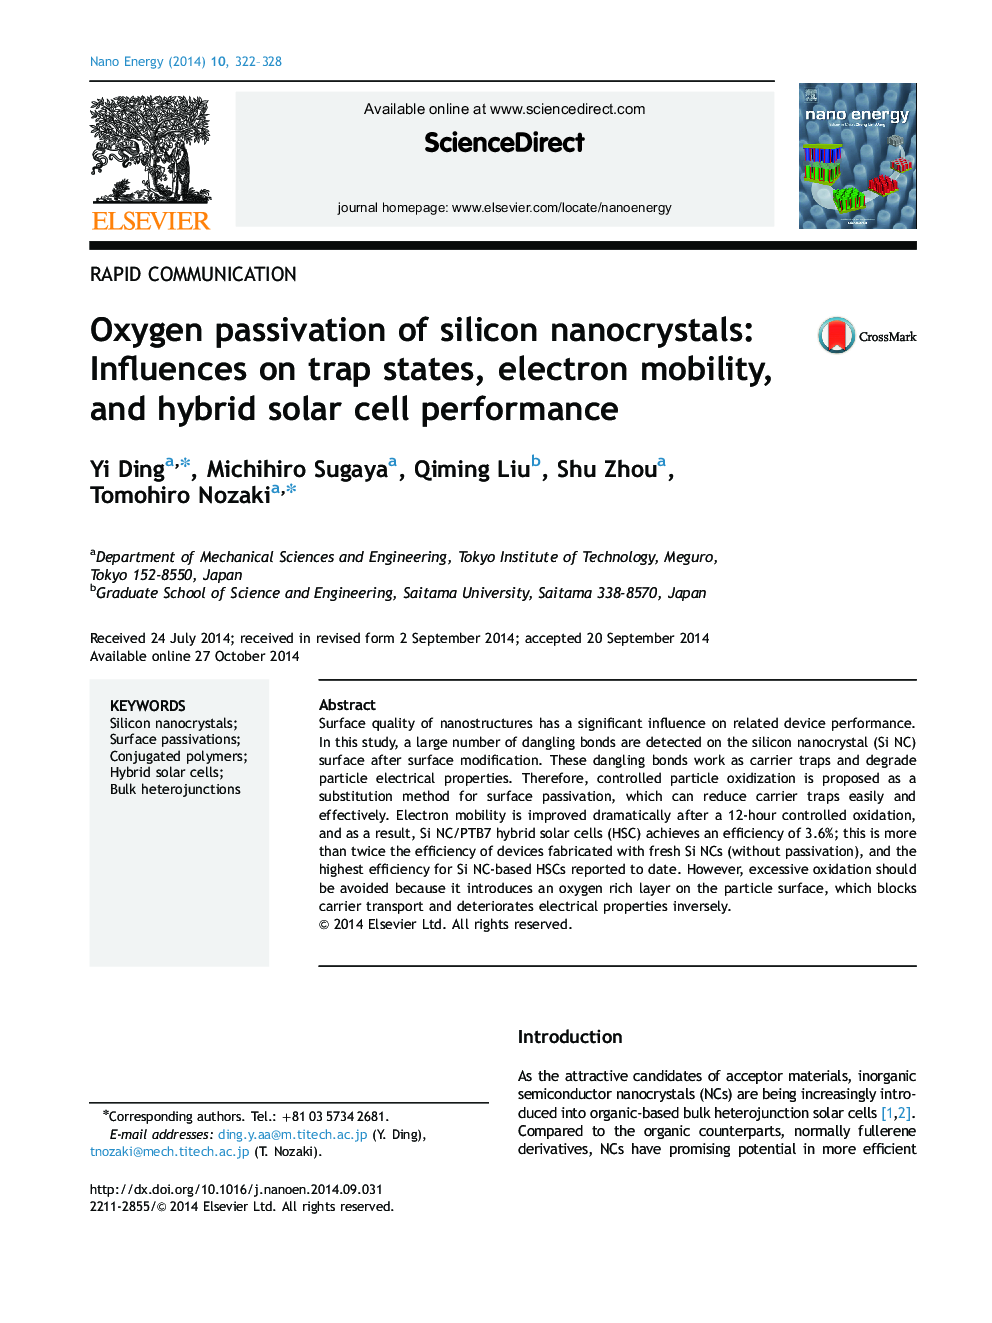 تسریع اکسیژن نانوبلورهای سیلیکون: تأثیرات بر حالت های تله، حرکت الکترون و عملکرد هیبریدی خورشیدی 